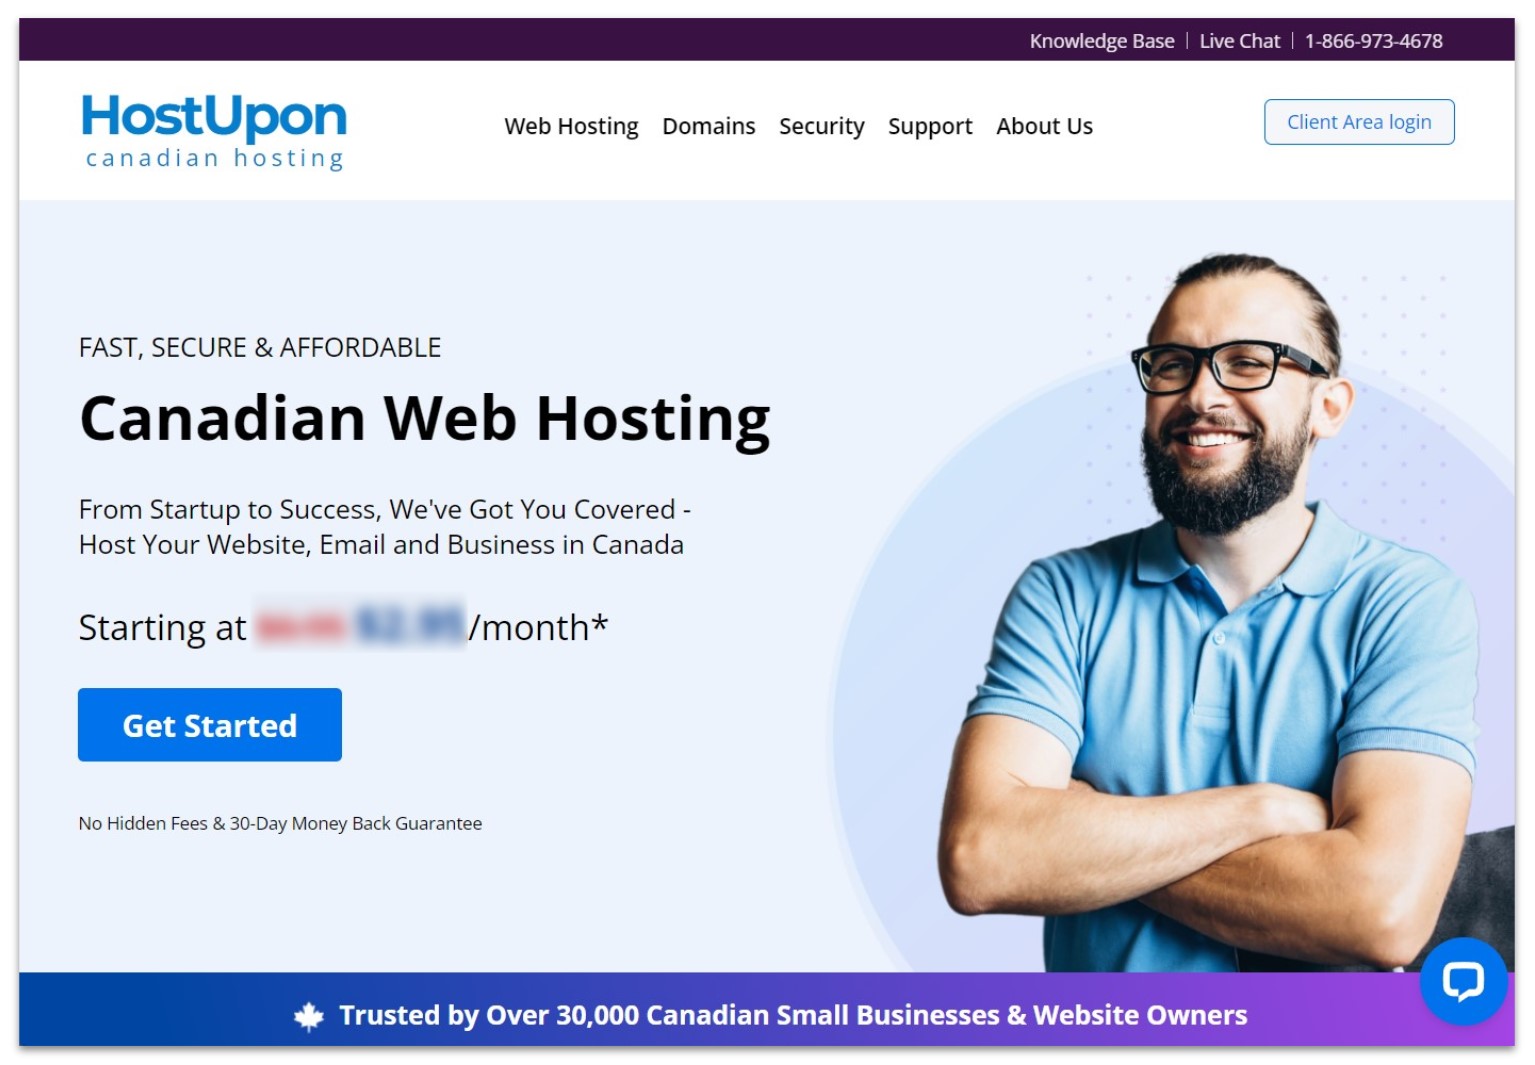 HostUpon Canadian web hosting landing page